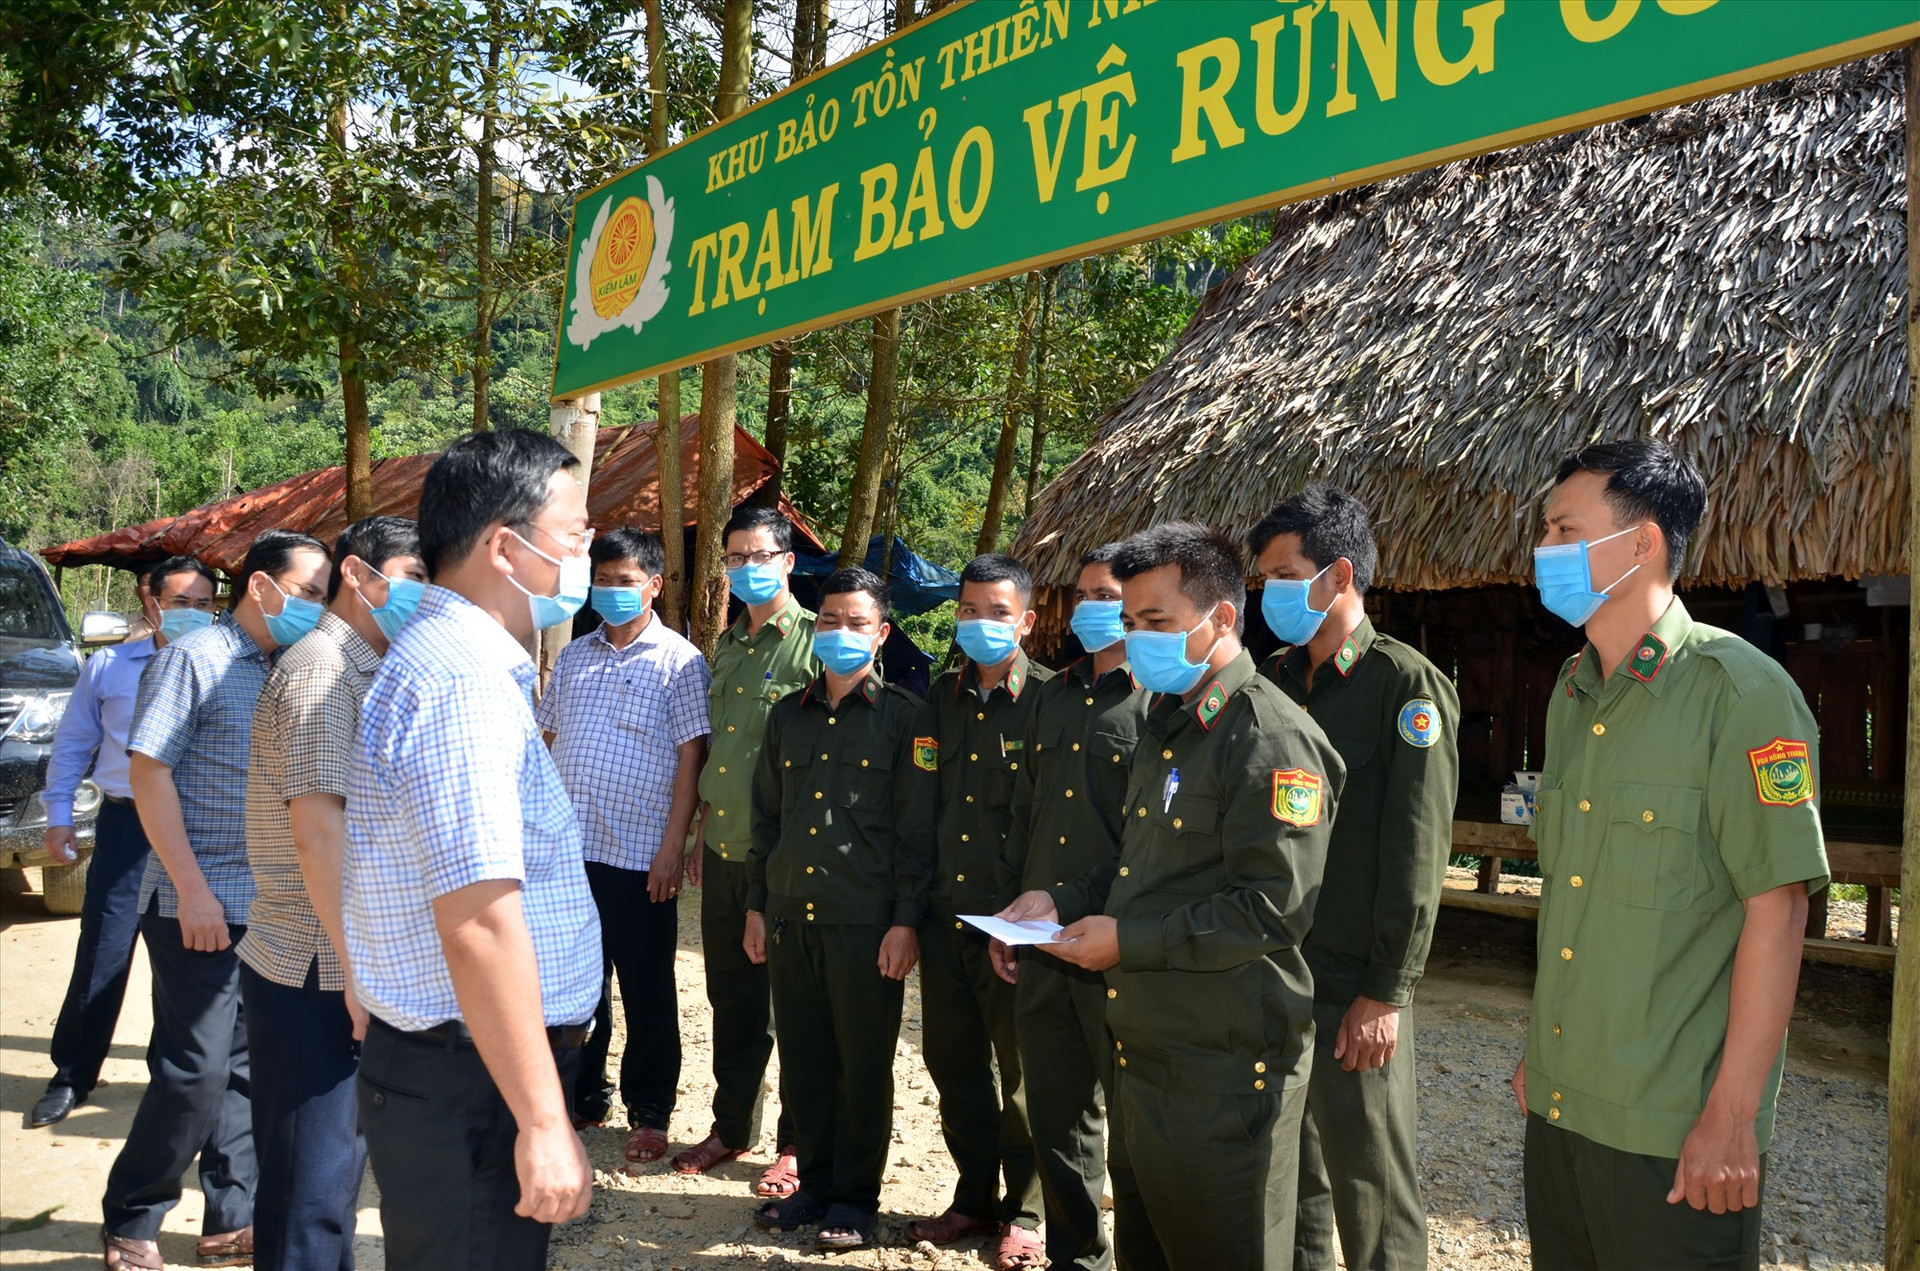 Chủ tịch UBND tỉnh Lê Trí Thanh thăm một chốt bảo vệ rừng trong Vườn Quốc gia Sông Thanh hồi giữa tháng 5.2021. Ảnh: H.P